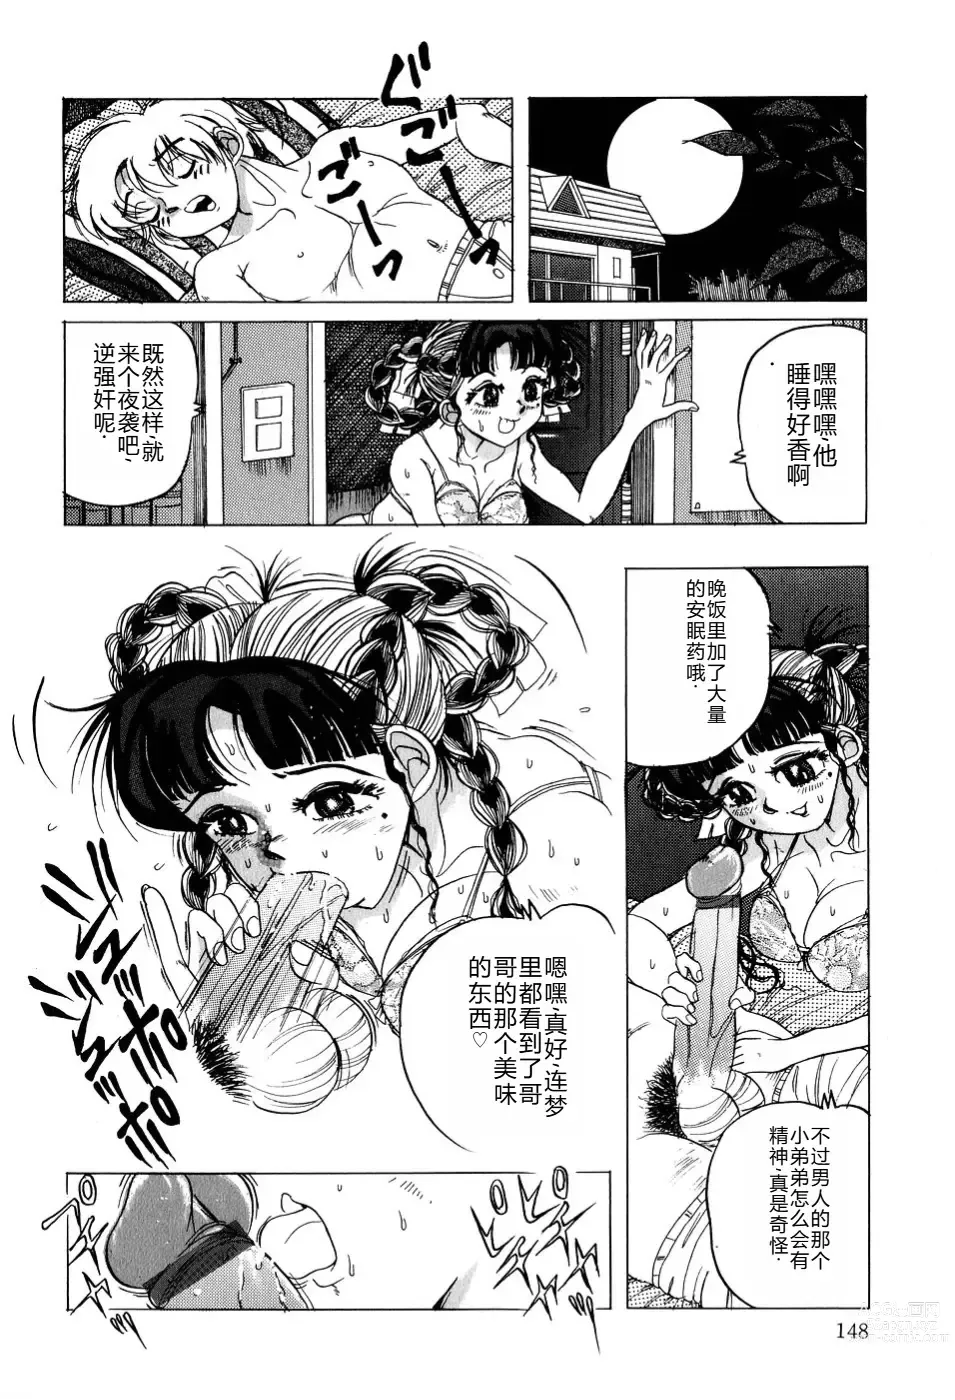 Page 149 of manga Kusozume Benkihime